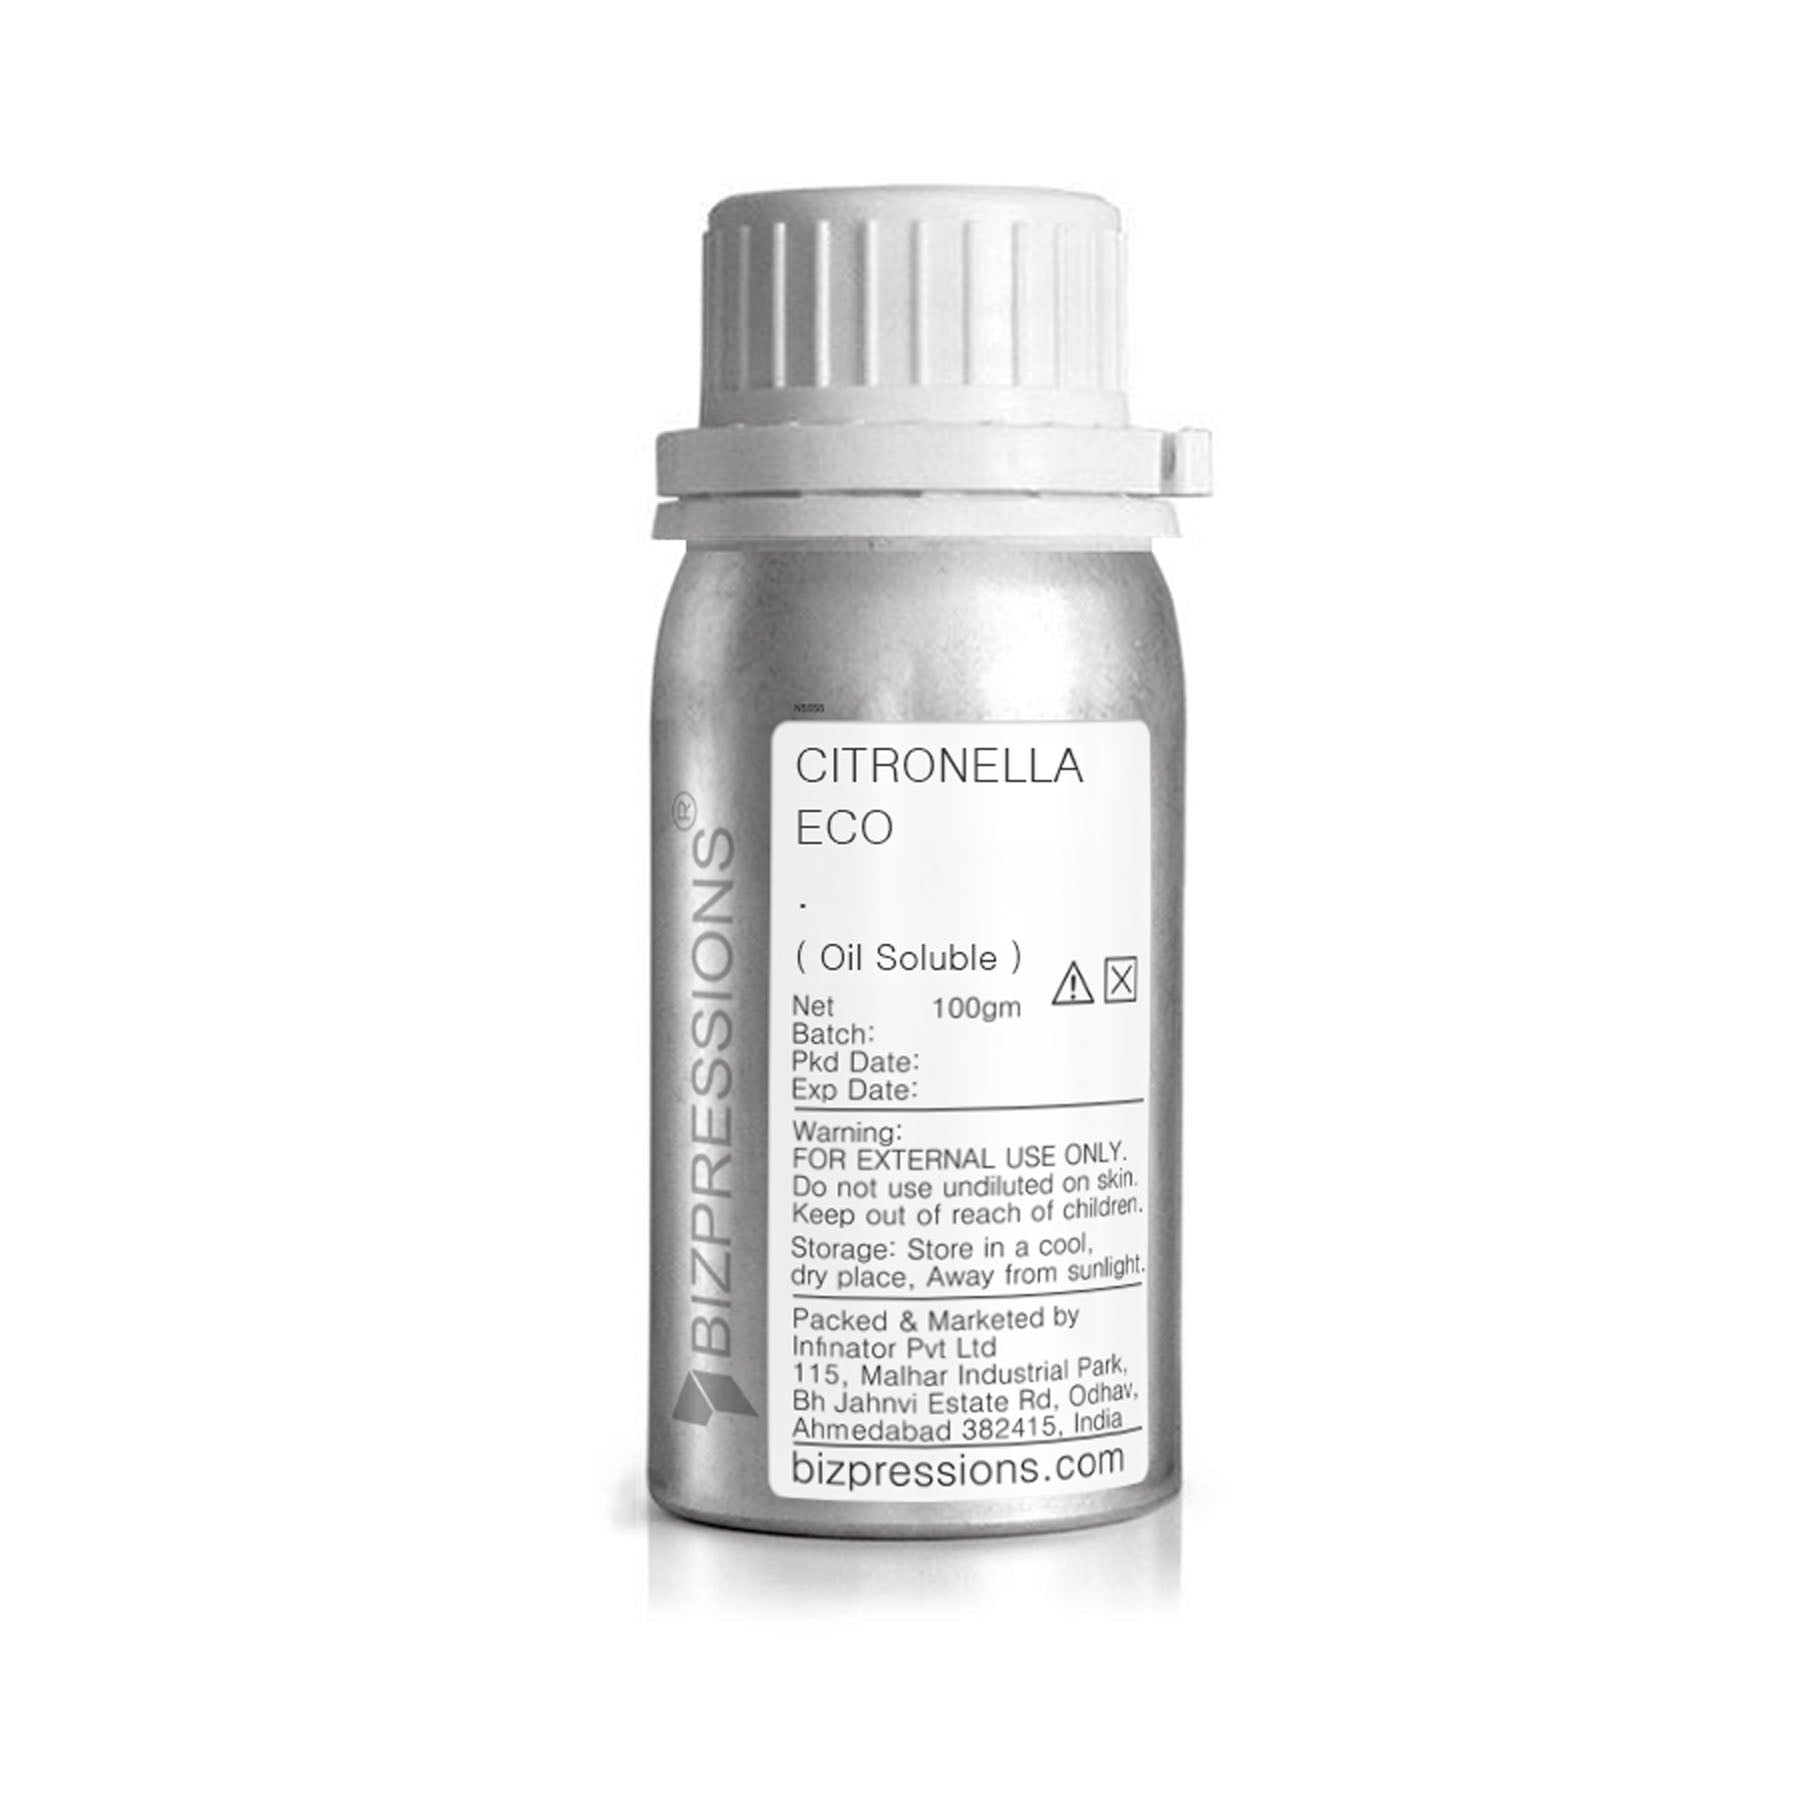 CITRONELLA ECO - Fragrance ( Oil Soluble ) - 100 gm